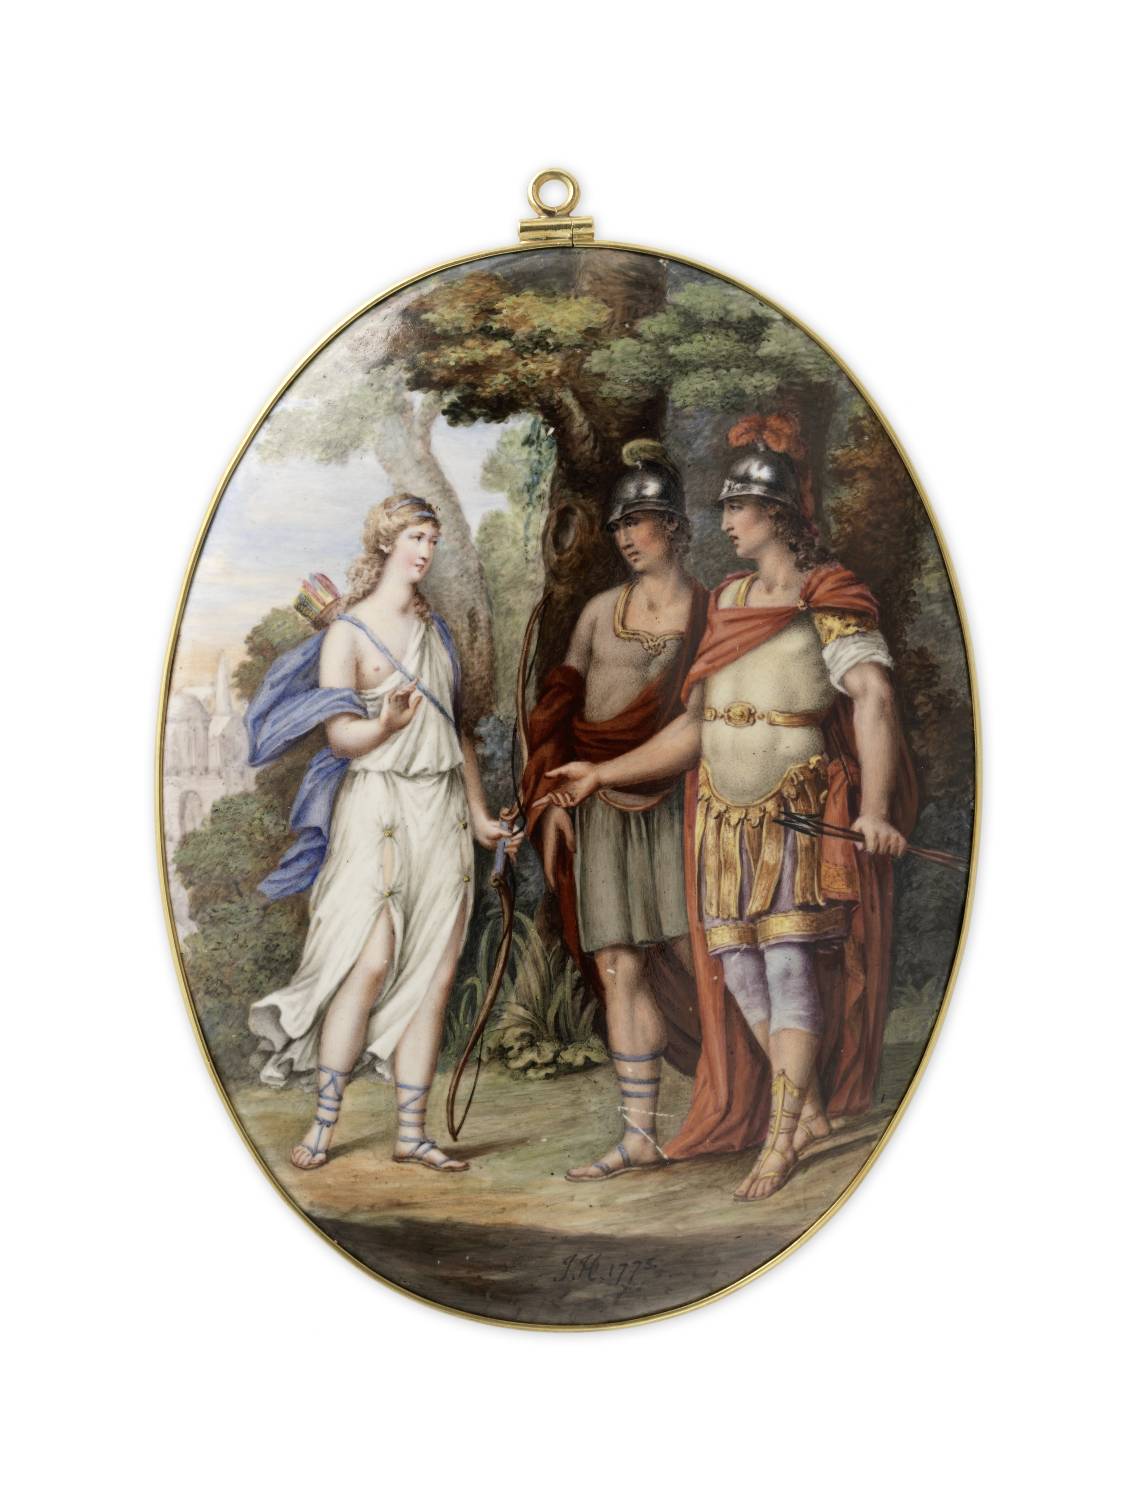 Venus erscheint Aeneas und Achates auf dem Weg nach Karthago